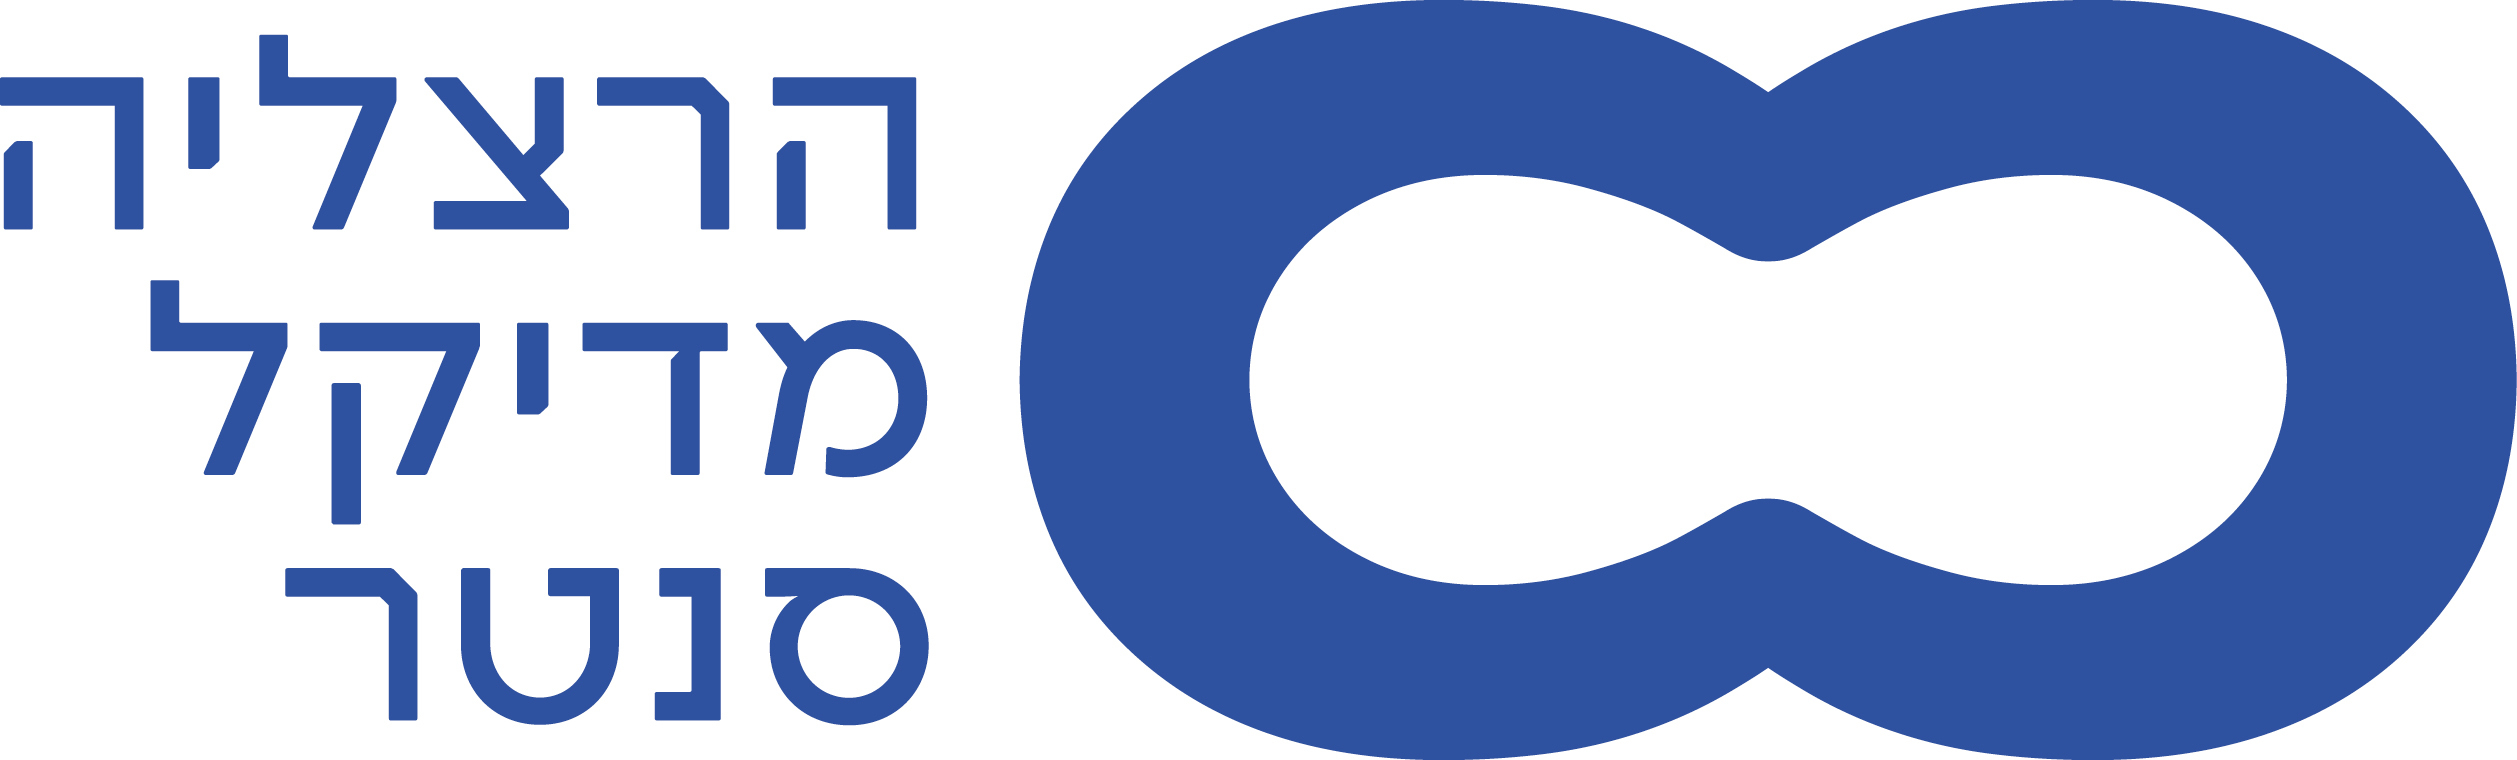 HMC Logo Blue